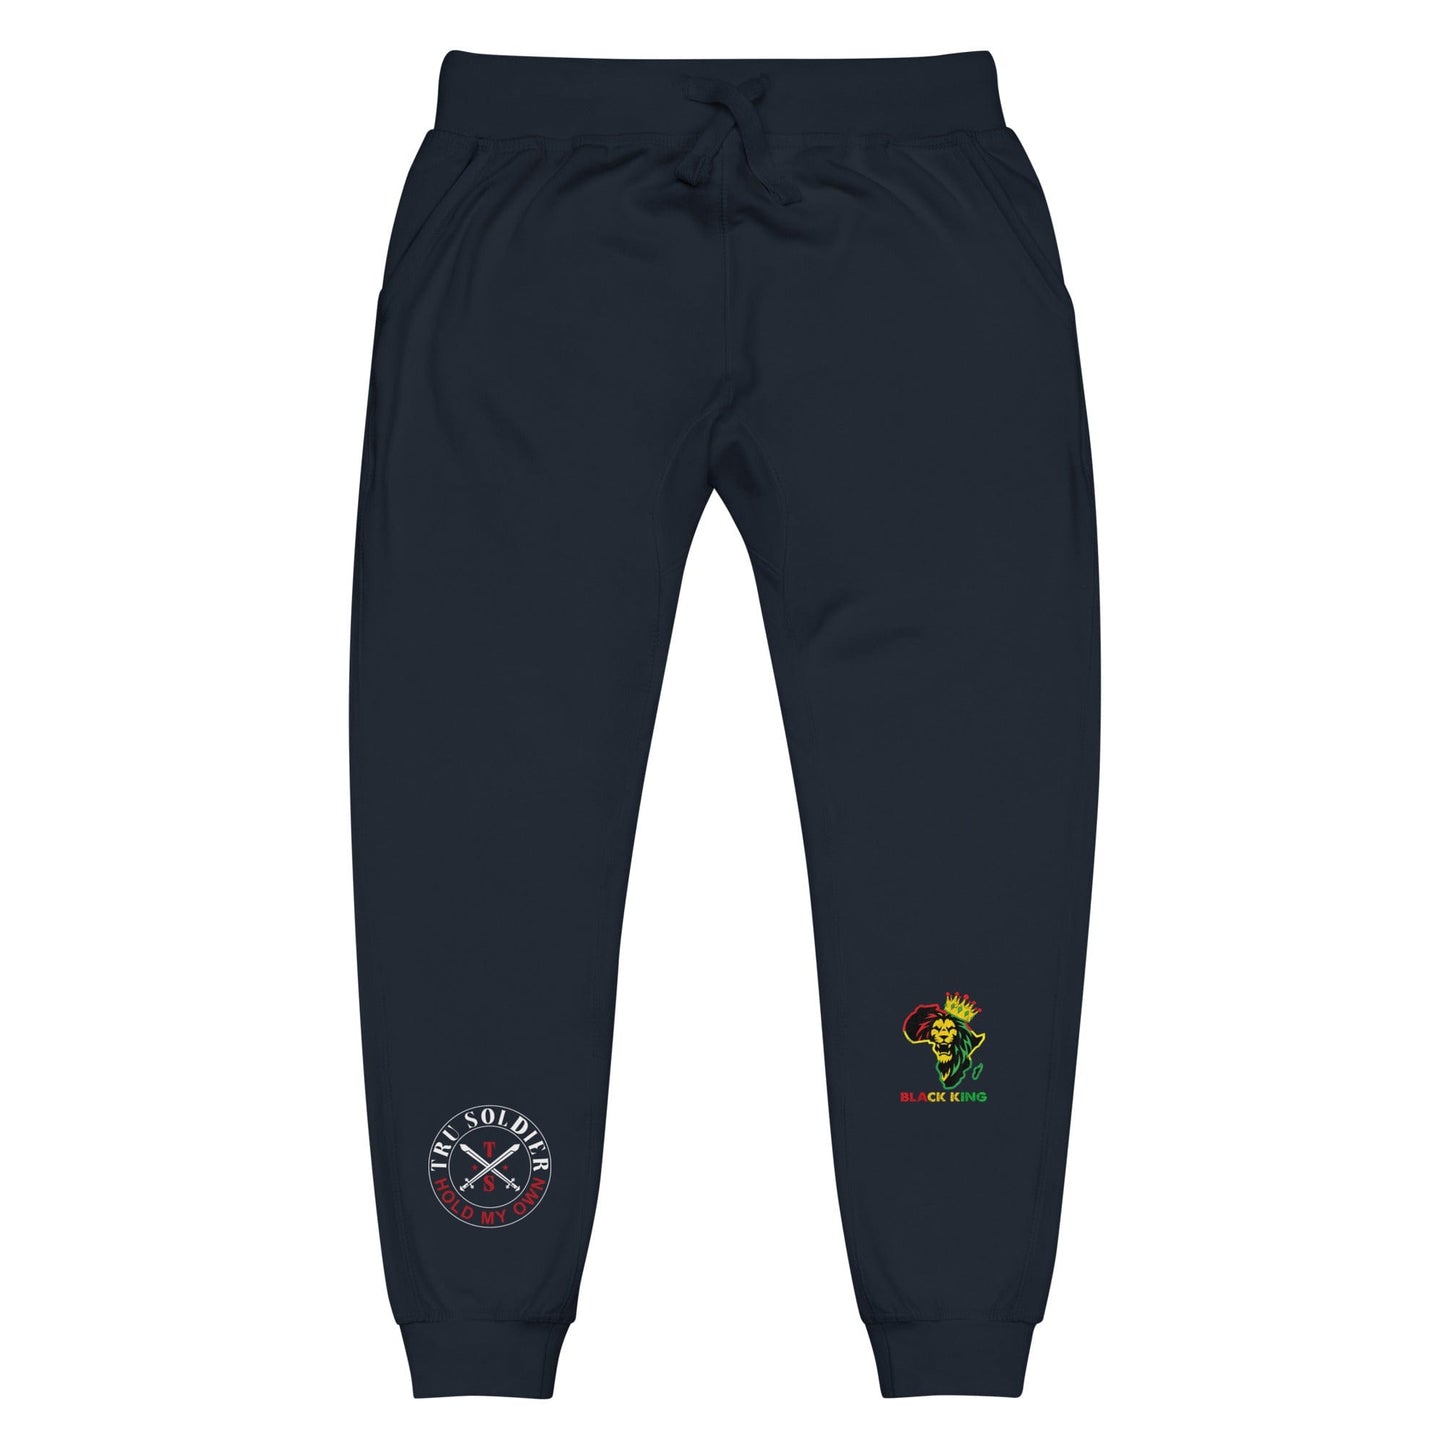 Tru Soldier Sportswear  Navy Blazer / XS Black King fleece sweatpants